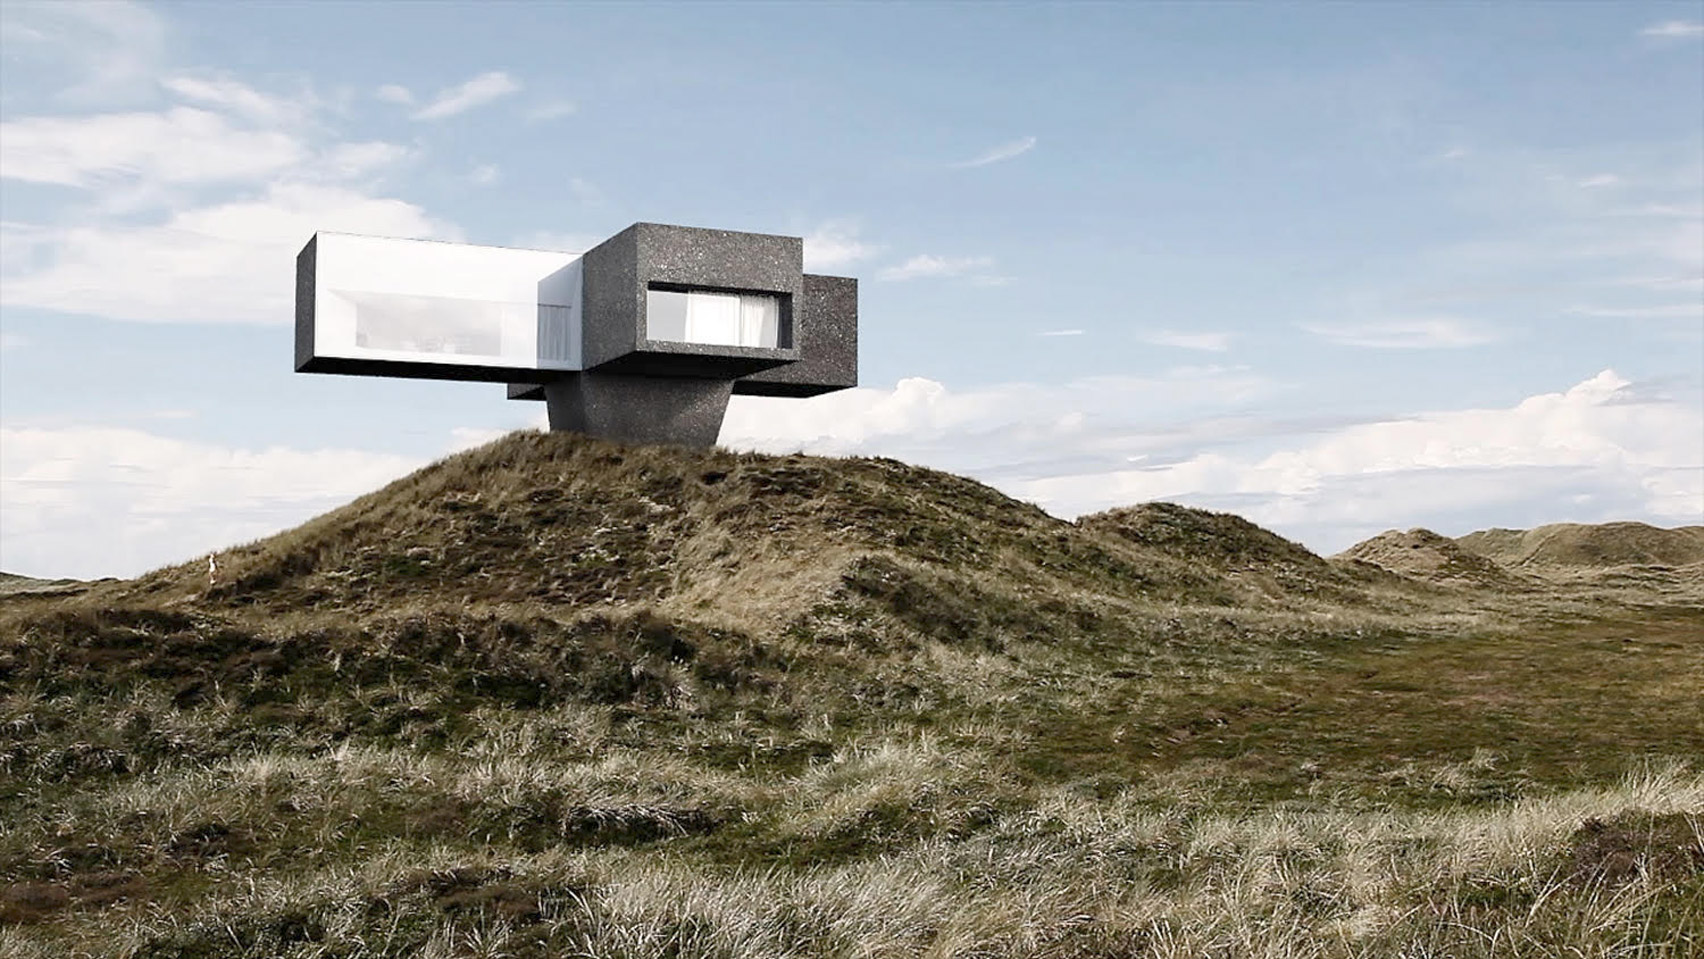 Studio Viktor Sørless models cinematic Dune House on Roman Polanski movie